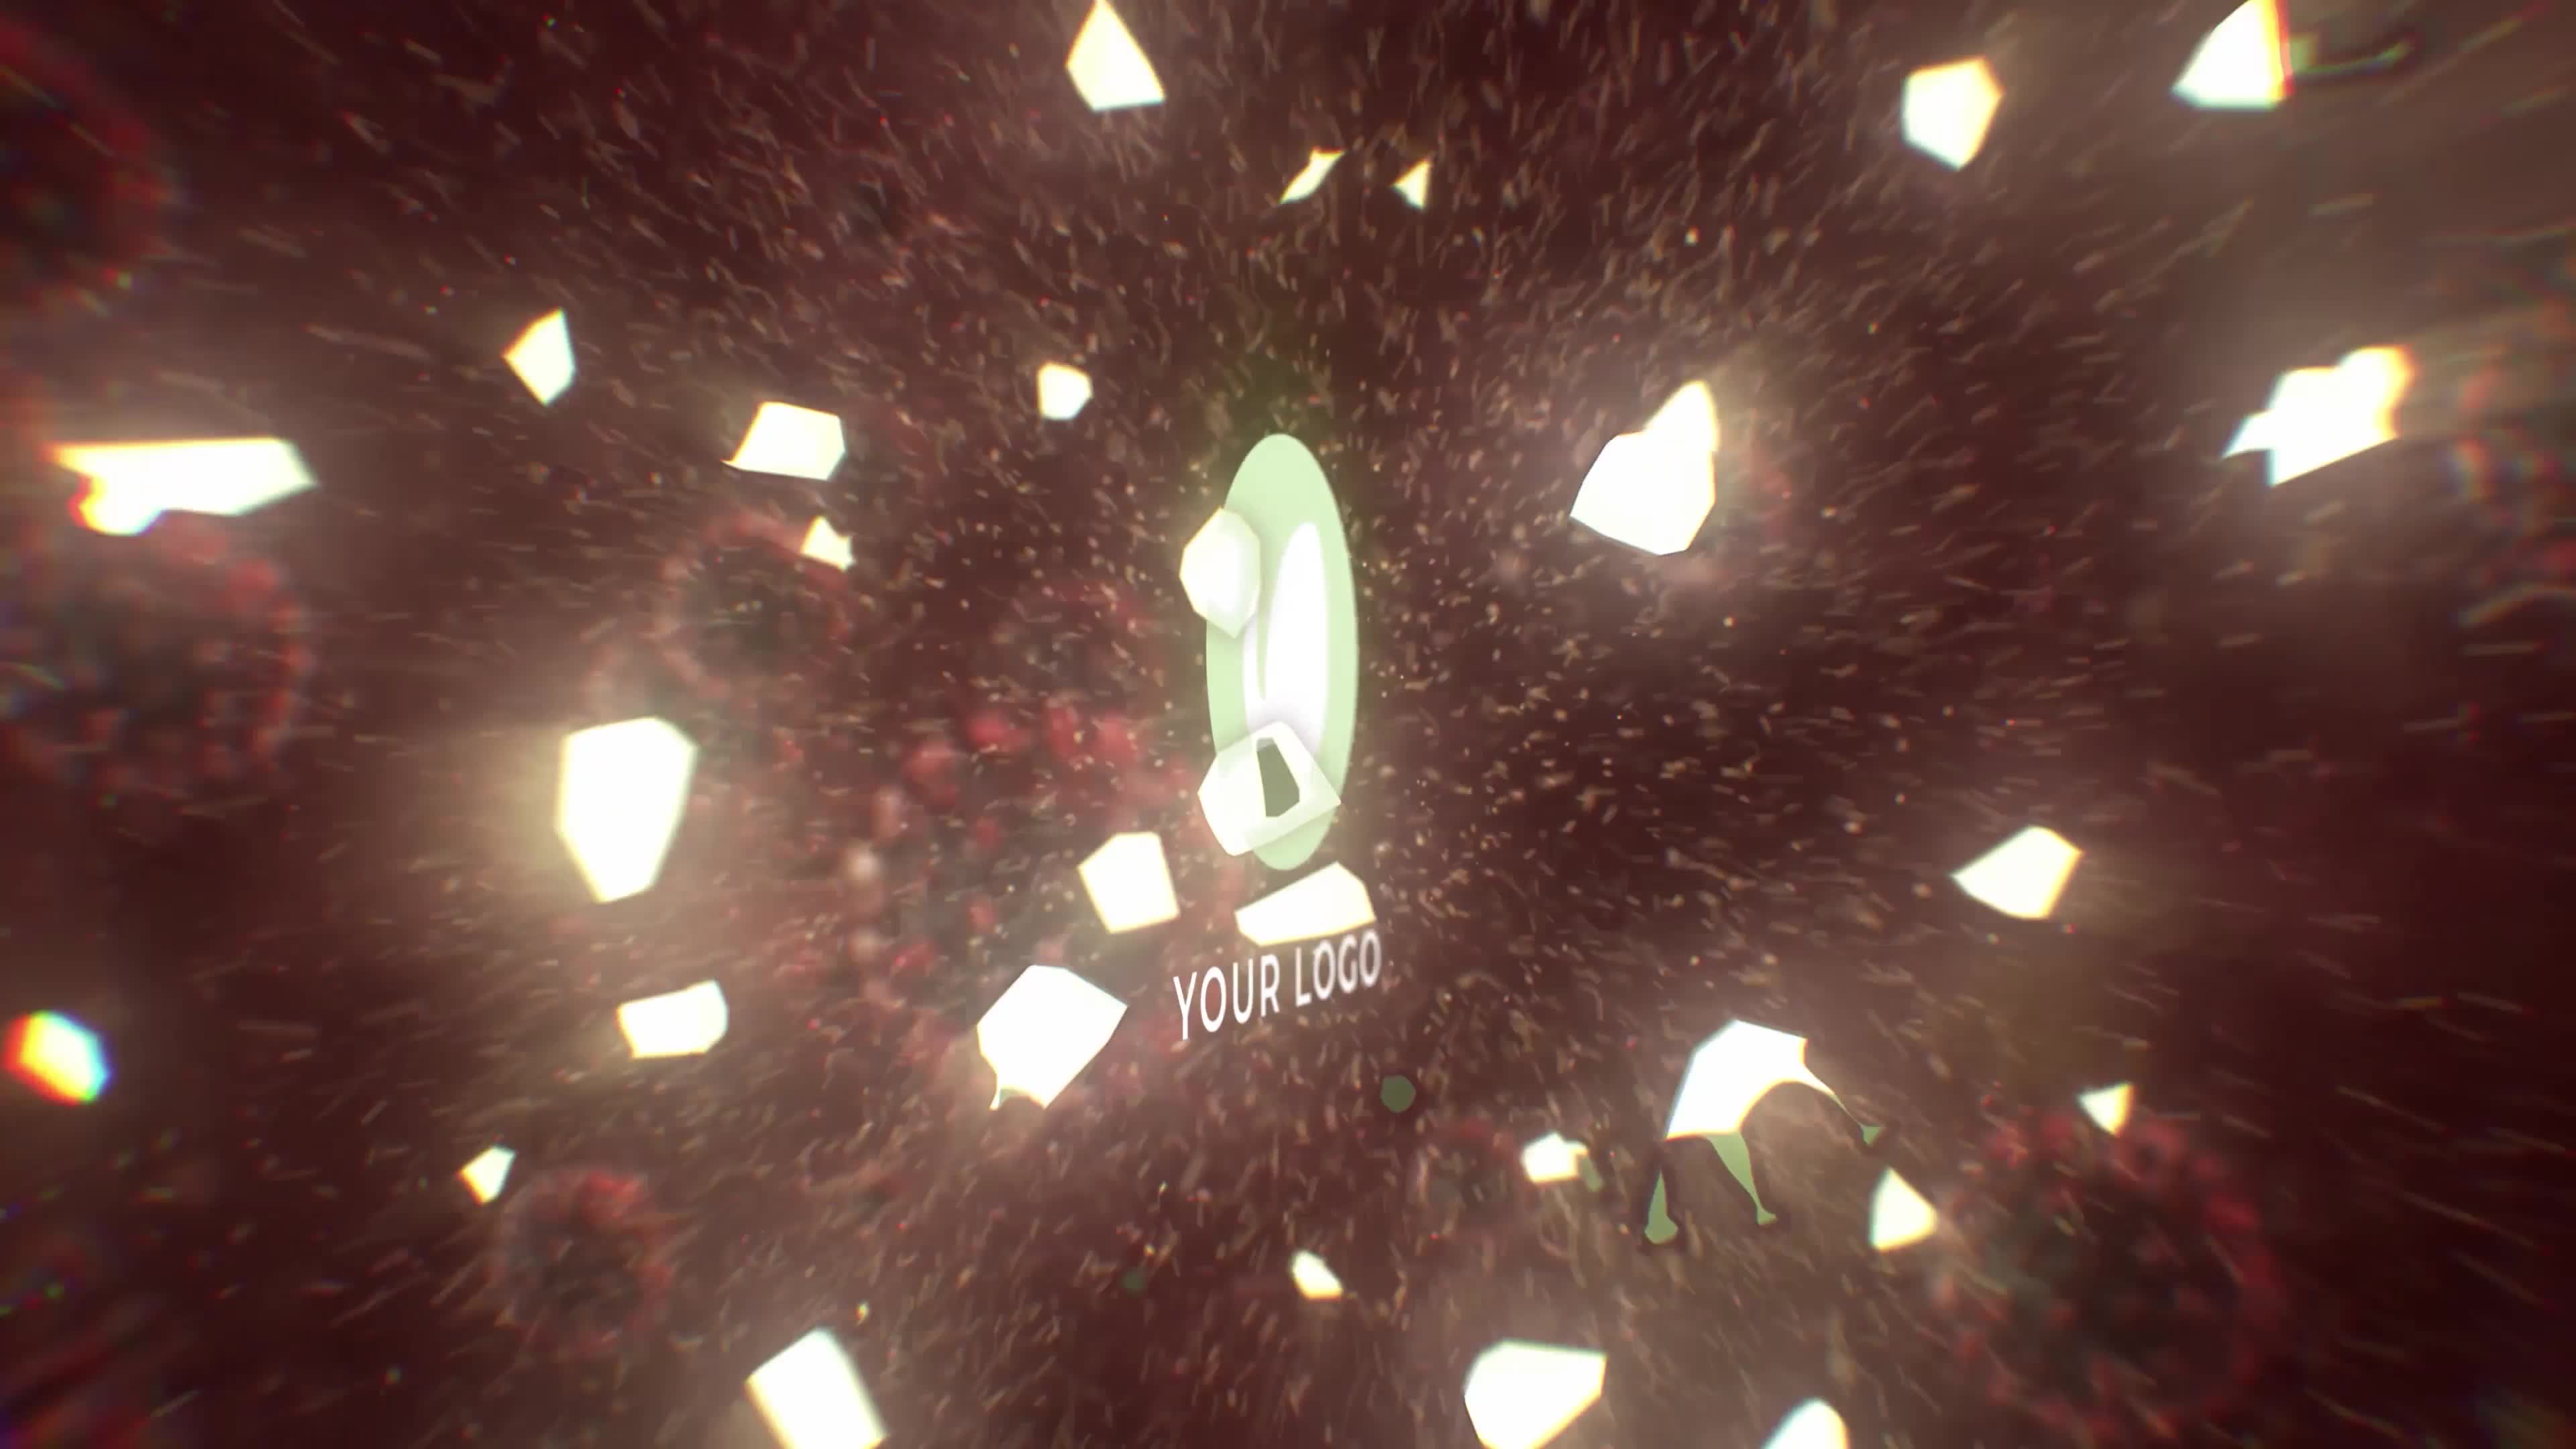 Virus Destruction Logo Reveal Videohive 26328449 Premiere Pro Image 6